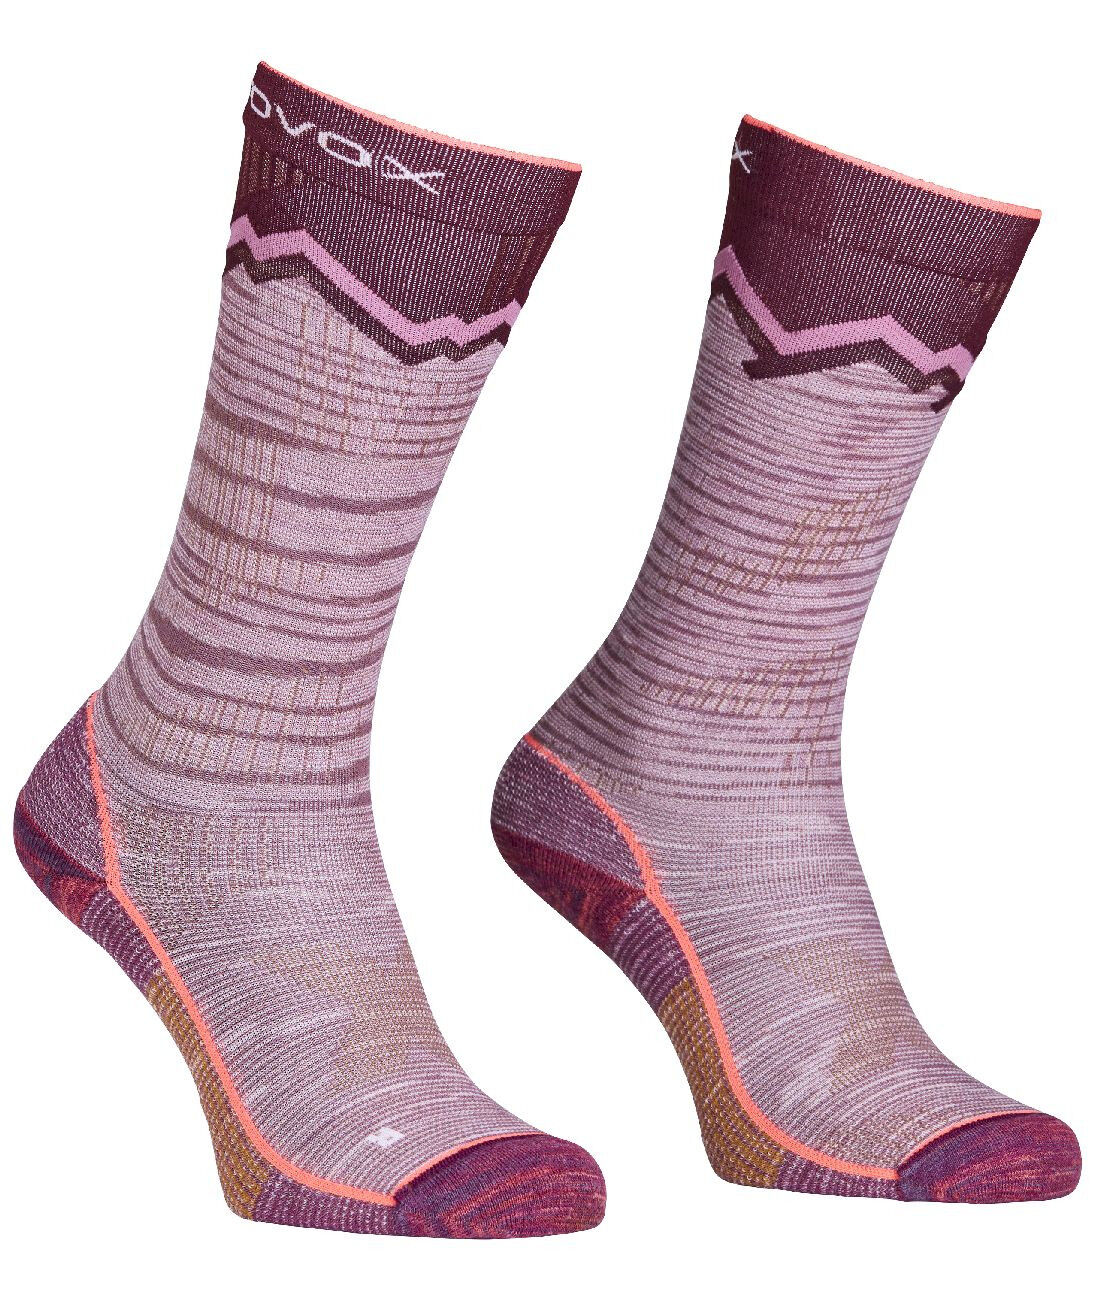 Ortovox Tour Long Socks - Calze da sci - Donna